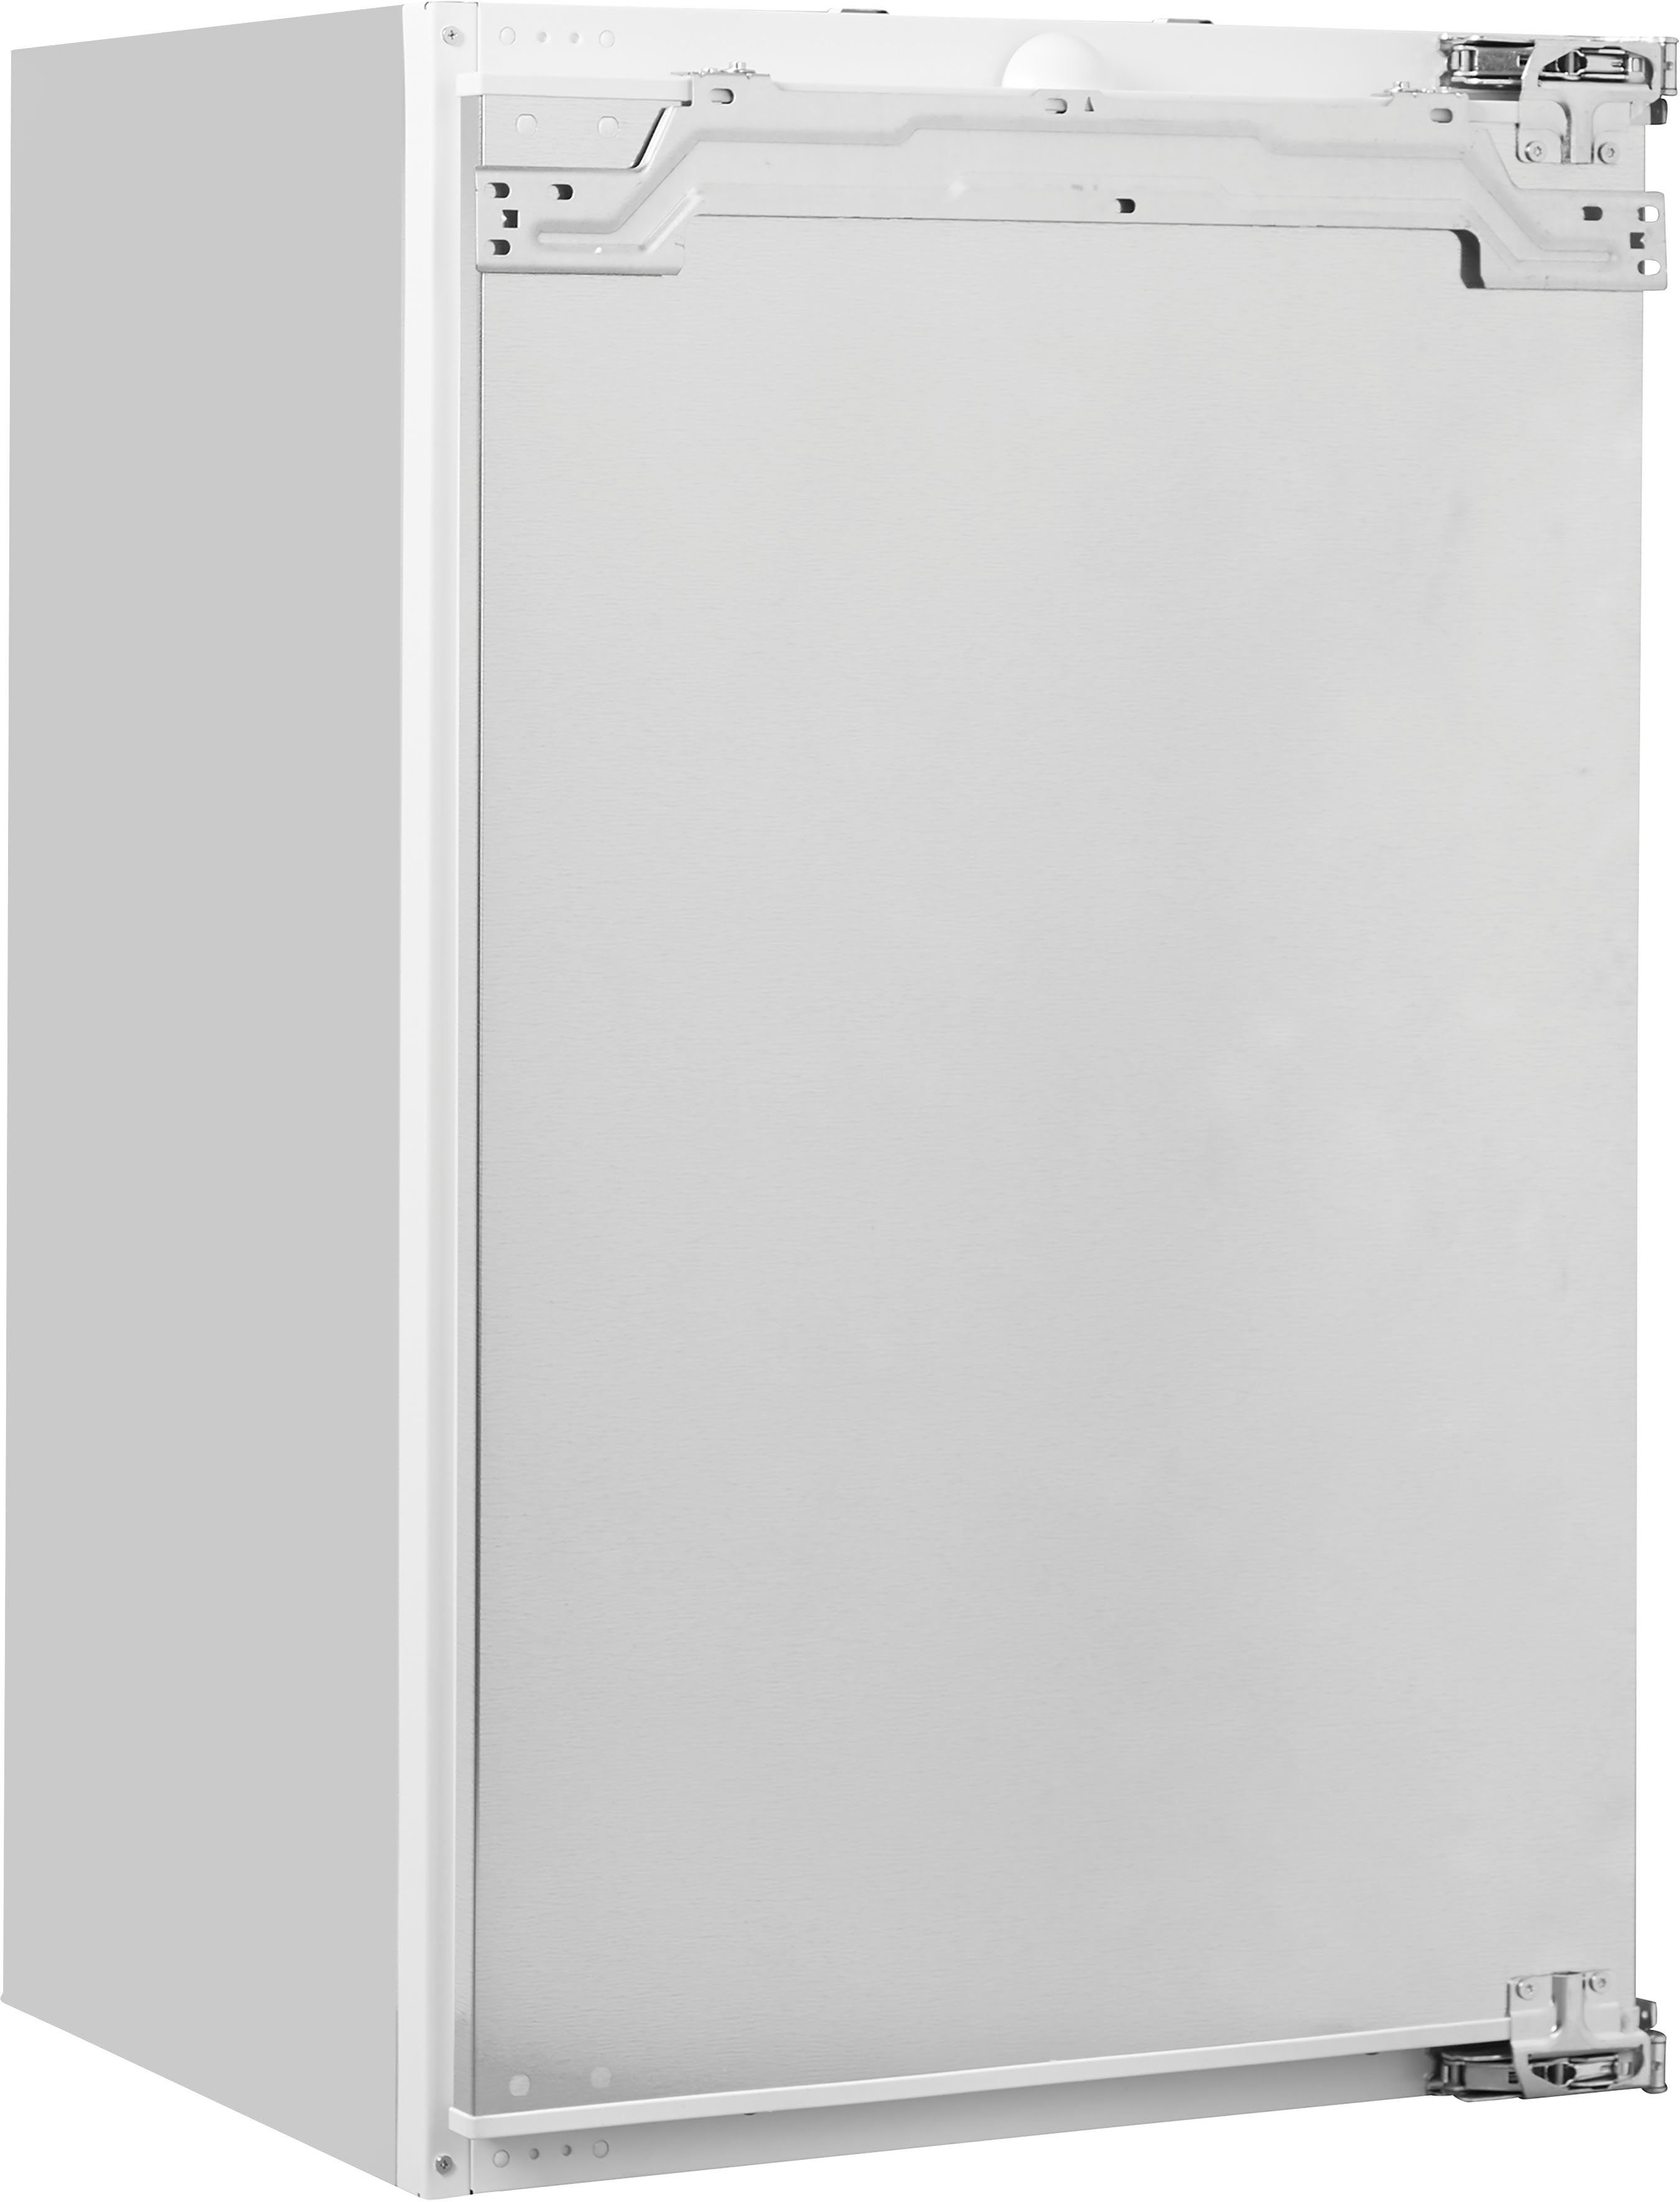 SIEMENS Einbaukühlschrank iQ100 KI18RNFF0, 87,4 cm hoch, 56 cm breit